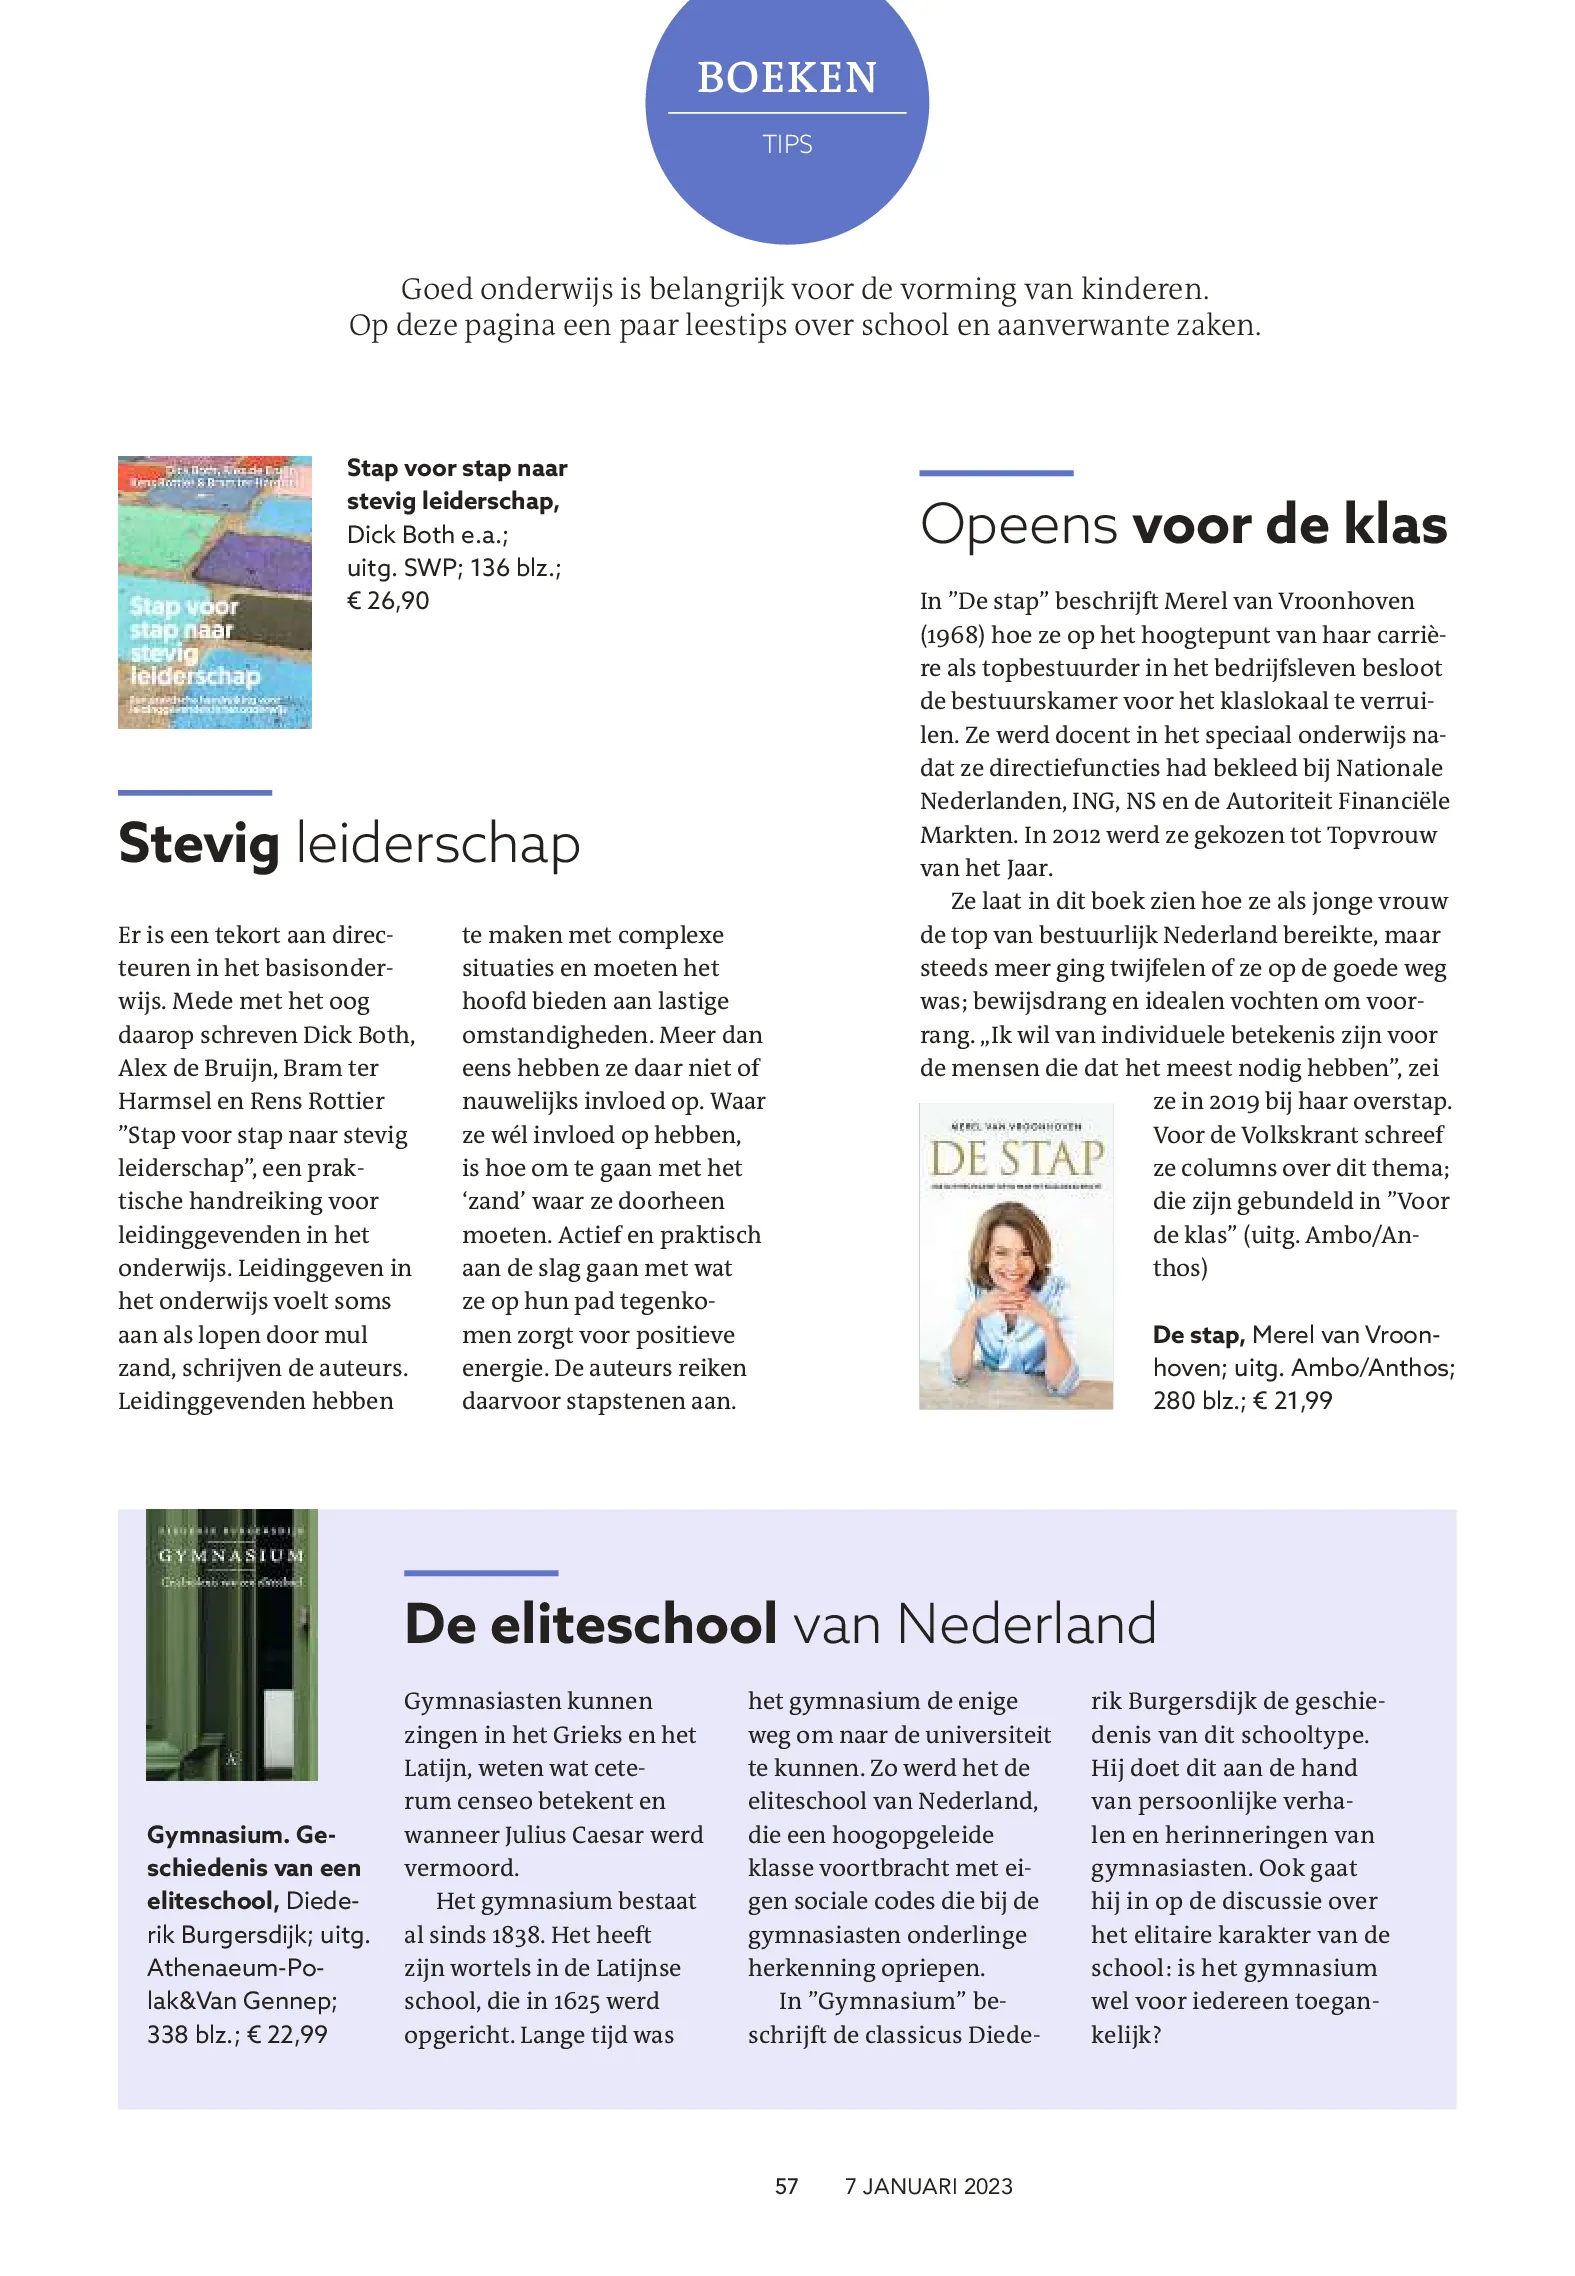 Website-Vroonhoven_-Merel-van-De-stap_-Reformatorisch-Dagblad_-7-jan-2023